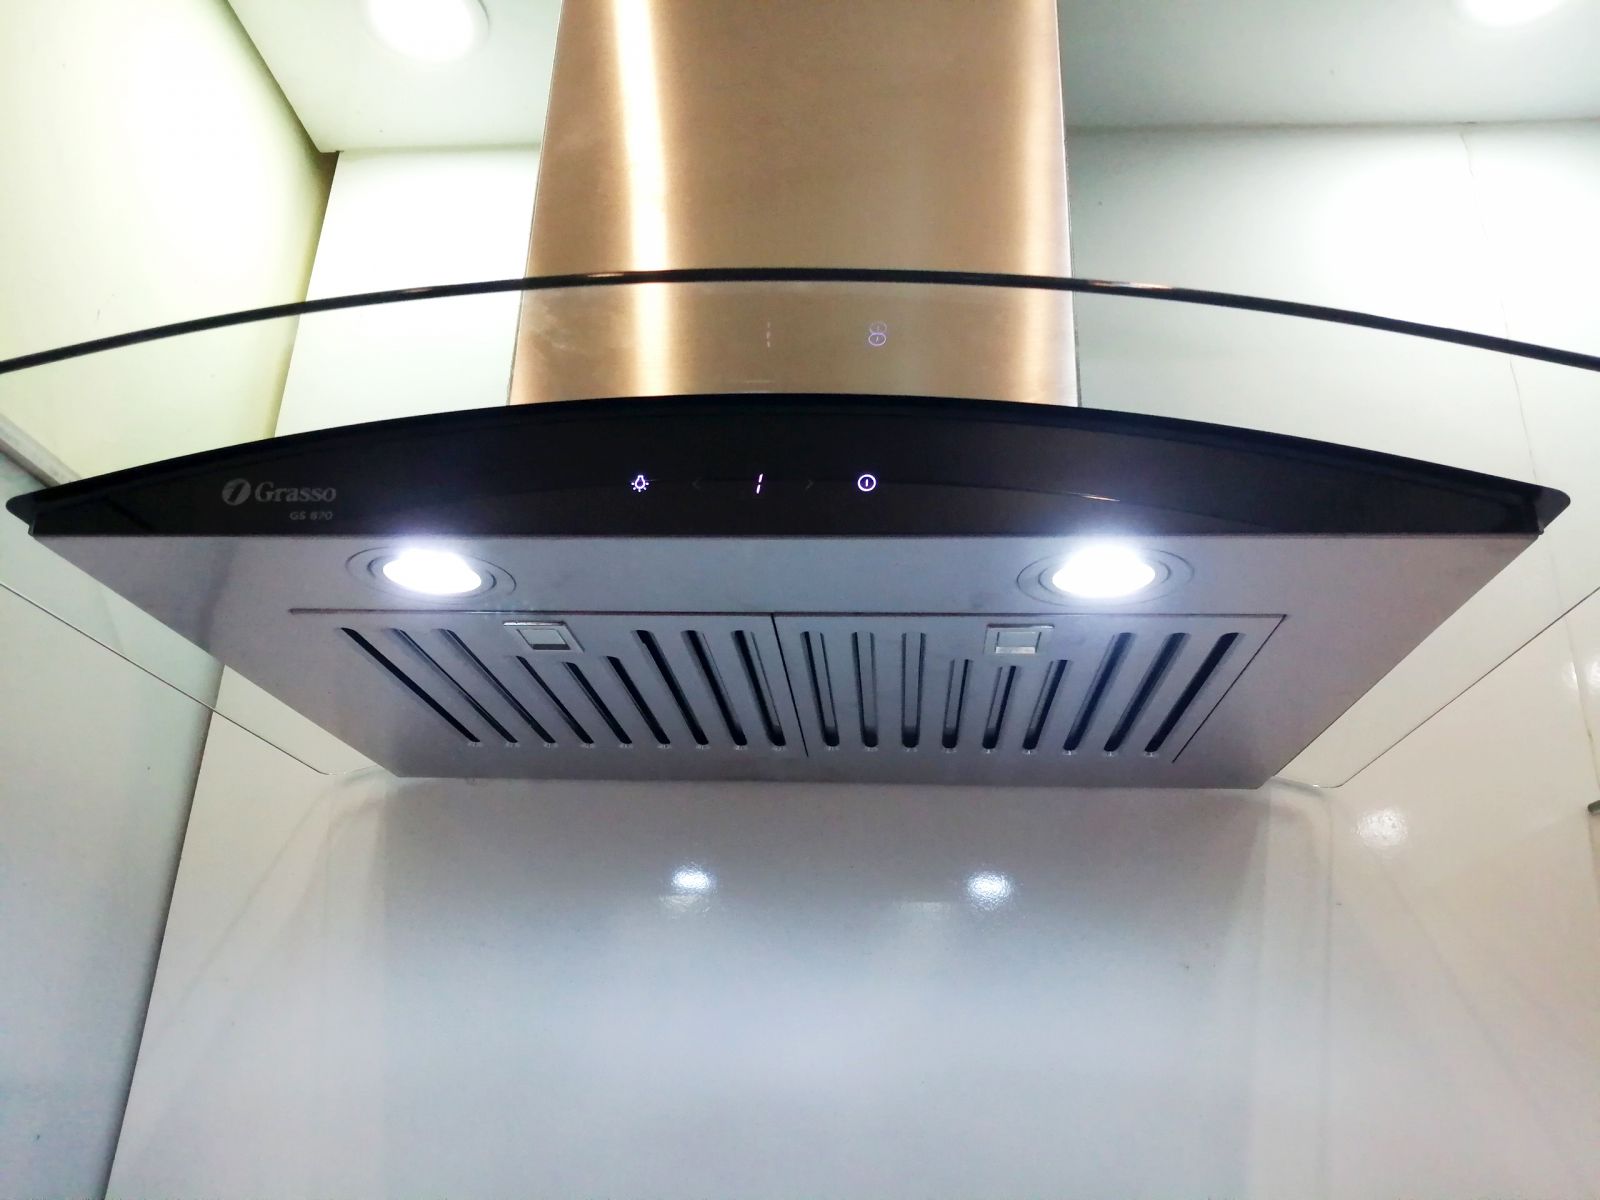 Thiết kế đèn led của máy hút mùi Gs 870/890 của Grasso